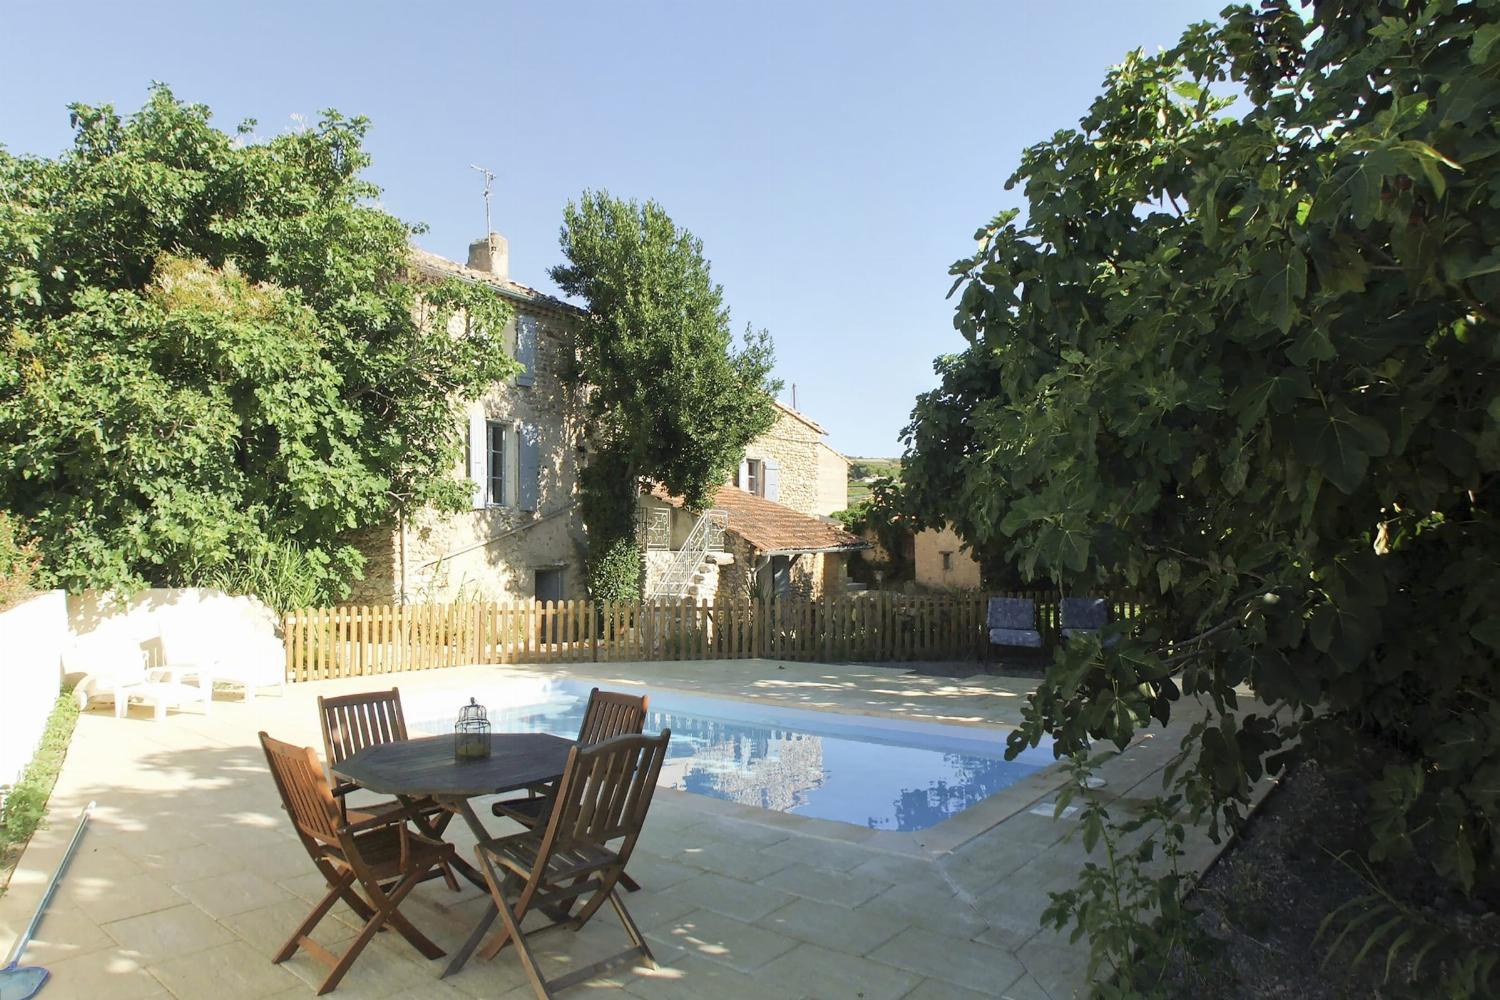 Location de vacances en Provence avec piscine privée